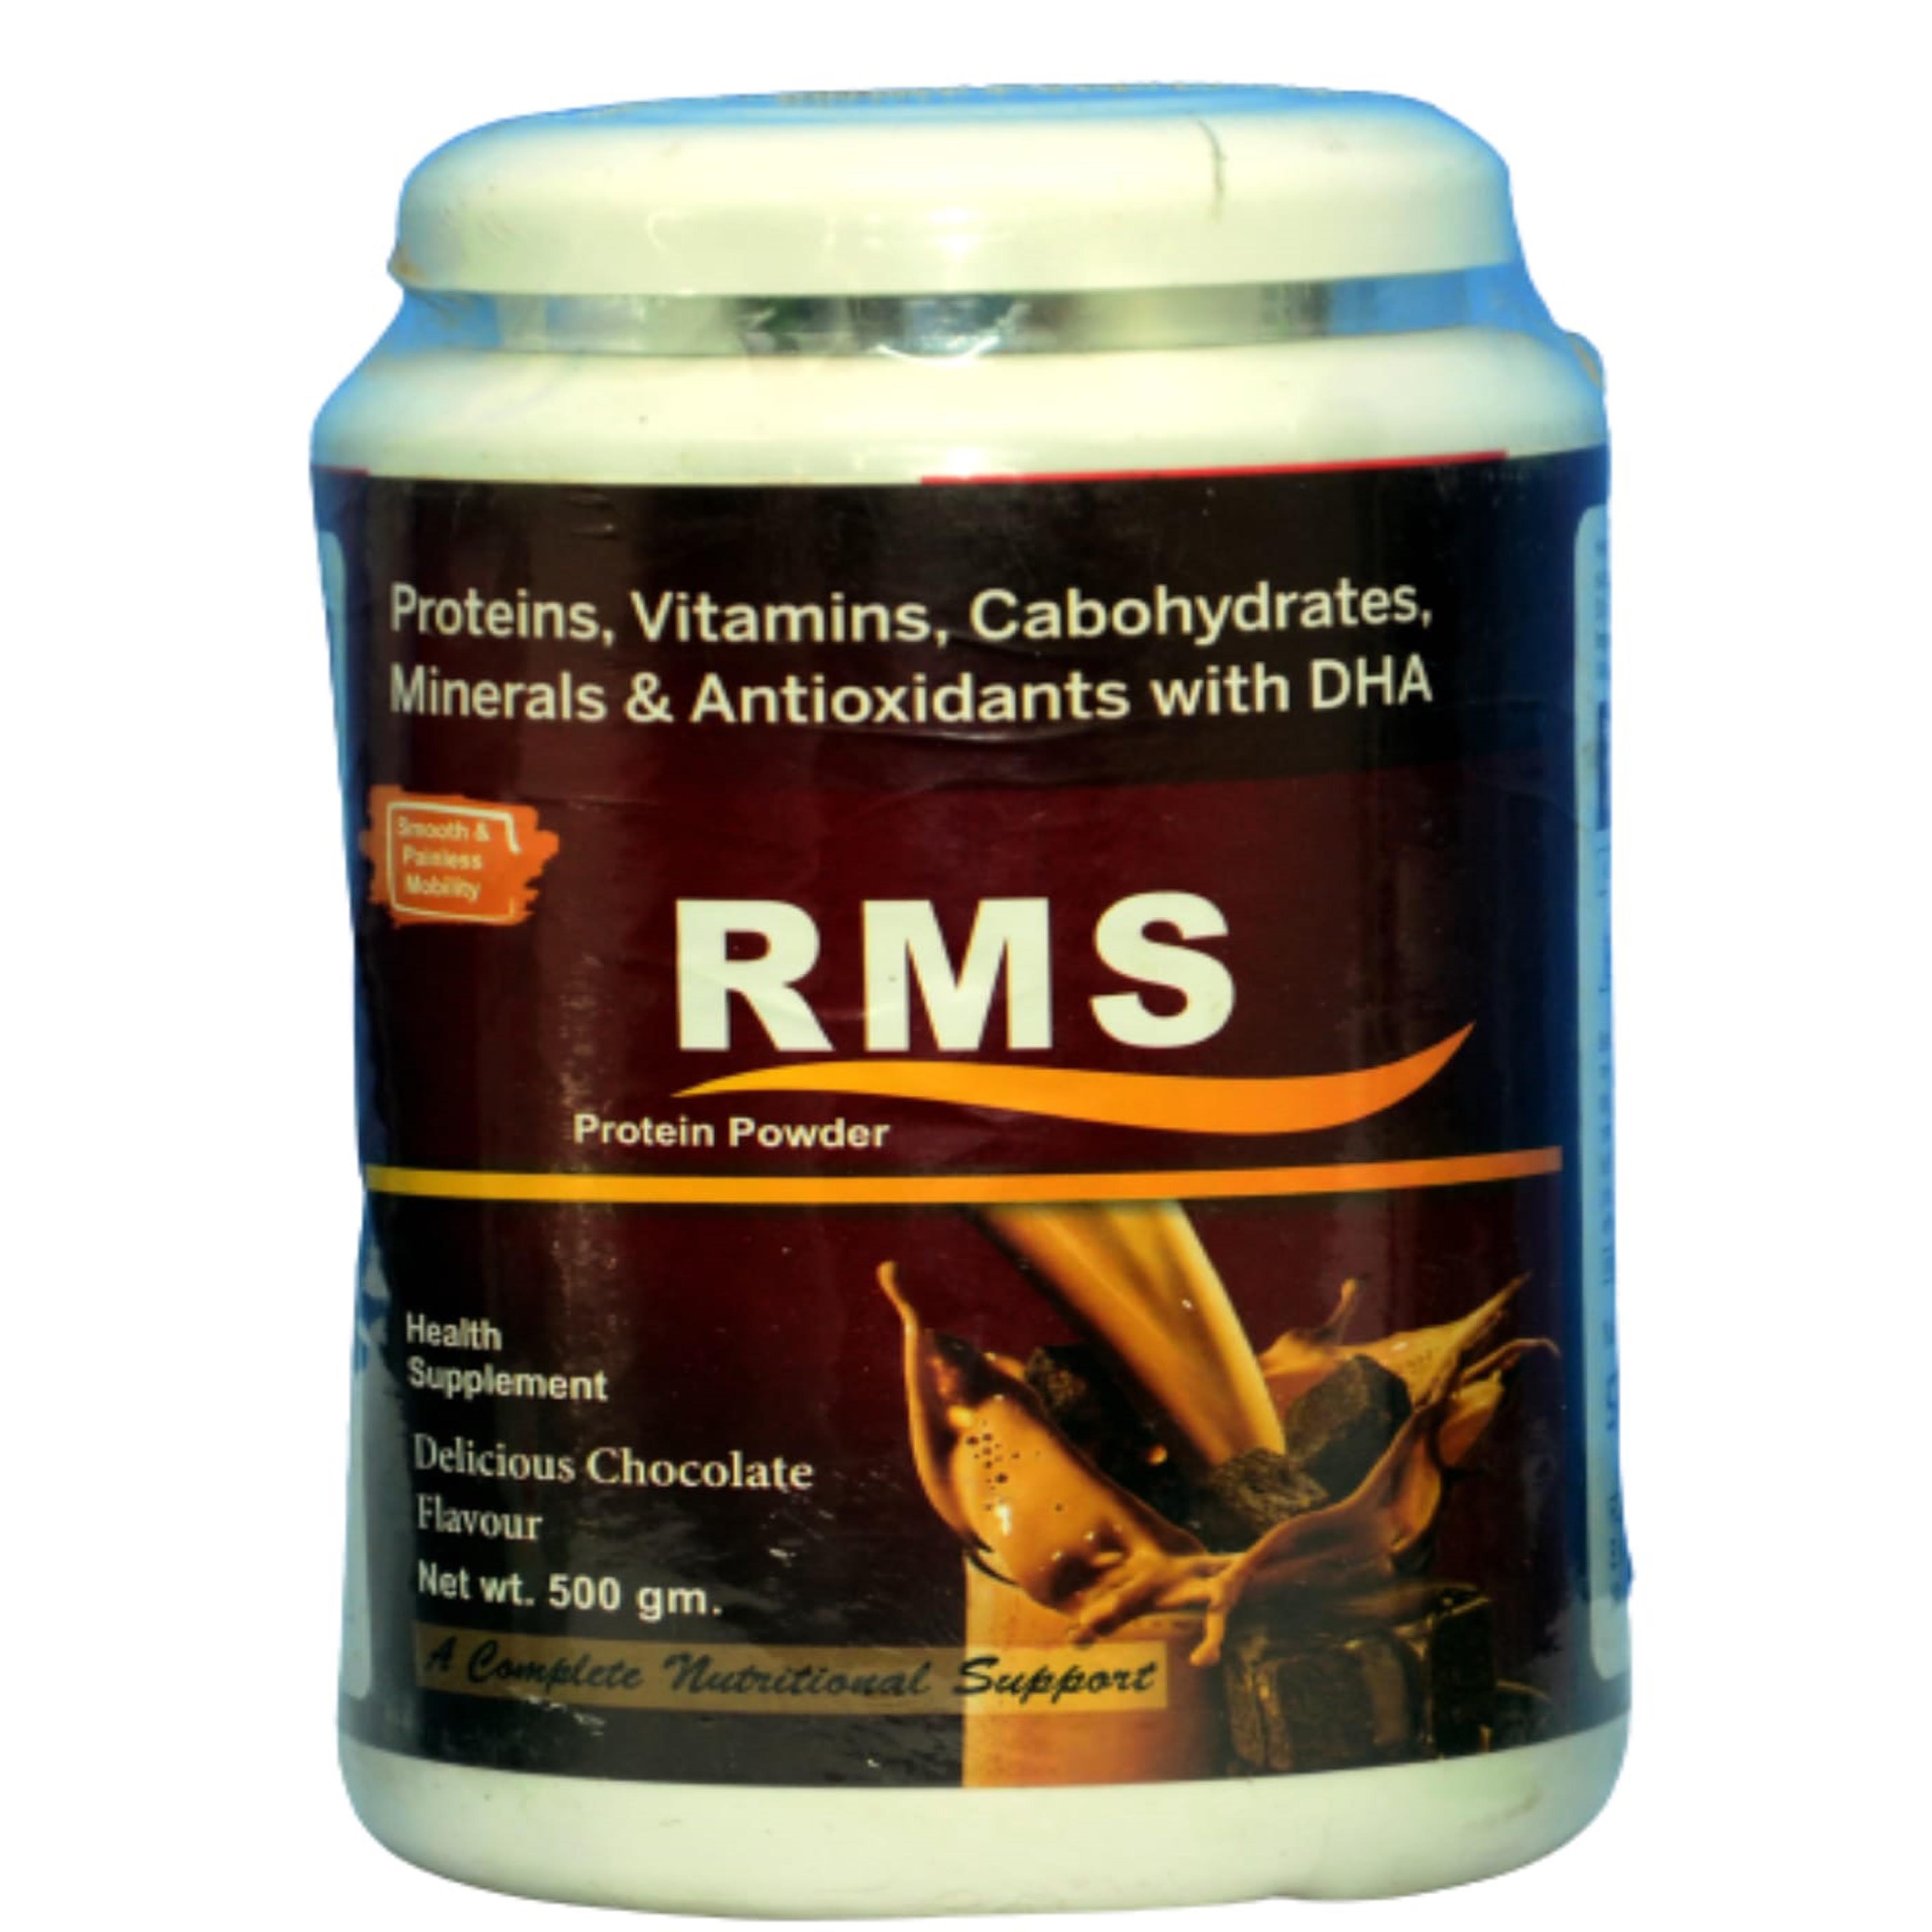 RMS Protein Powder